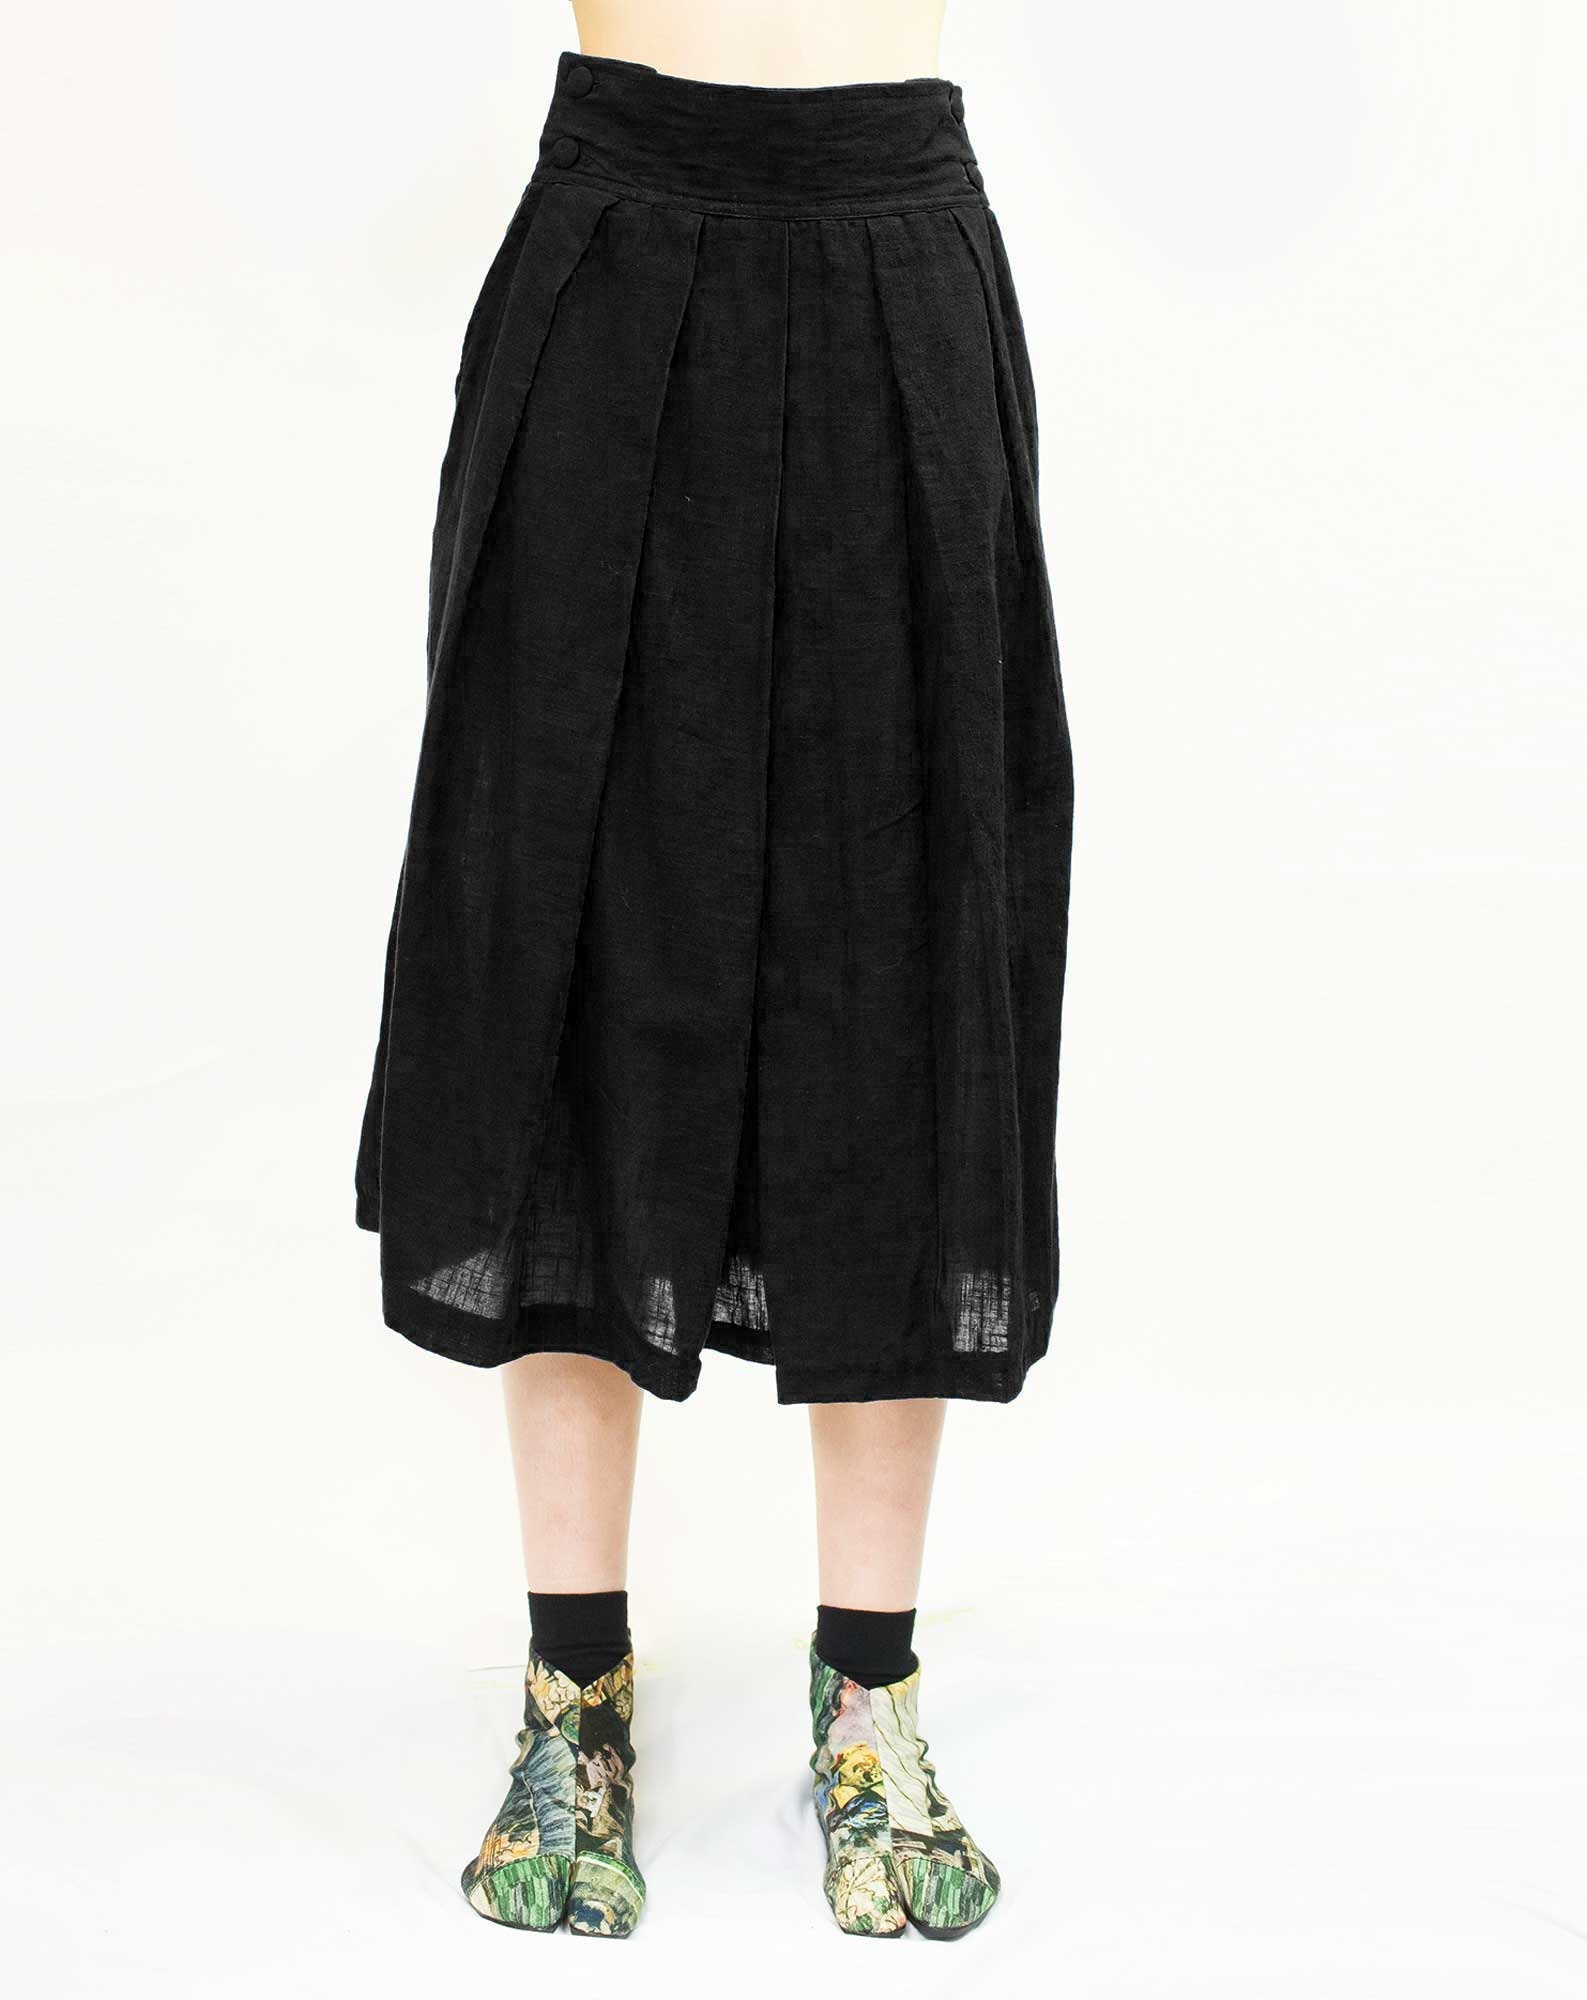 Hakama Cotton Light Skirt Black Samurai Skirt | Etsy